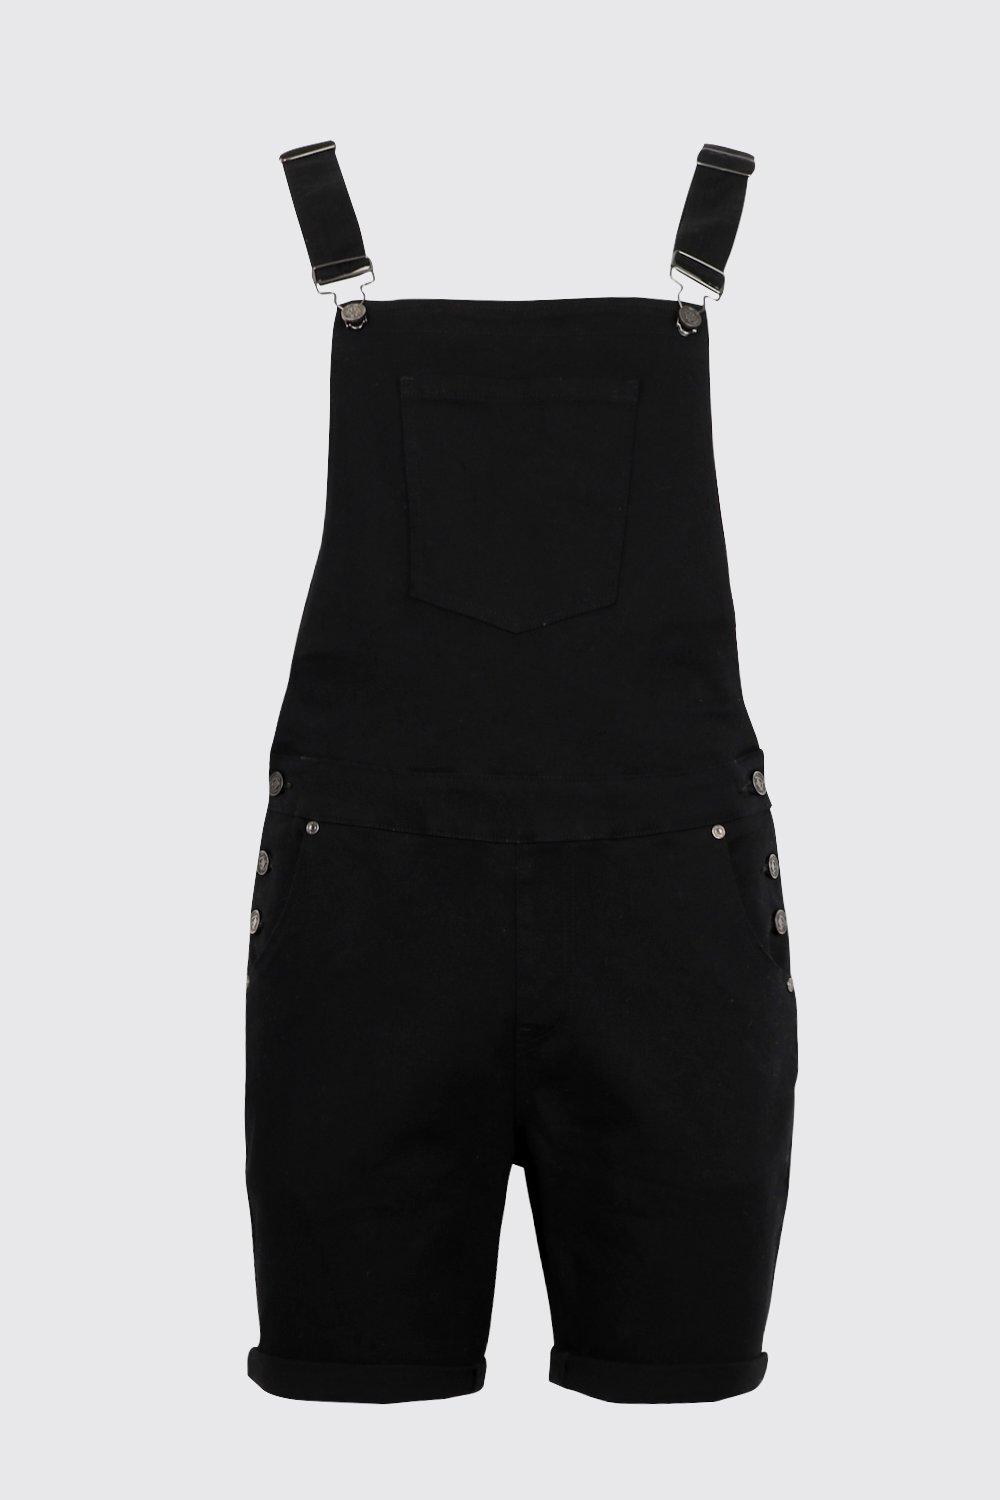 black denim overalls shorts